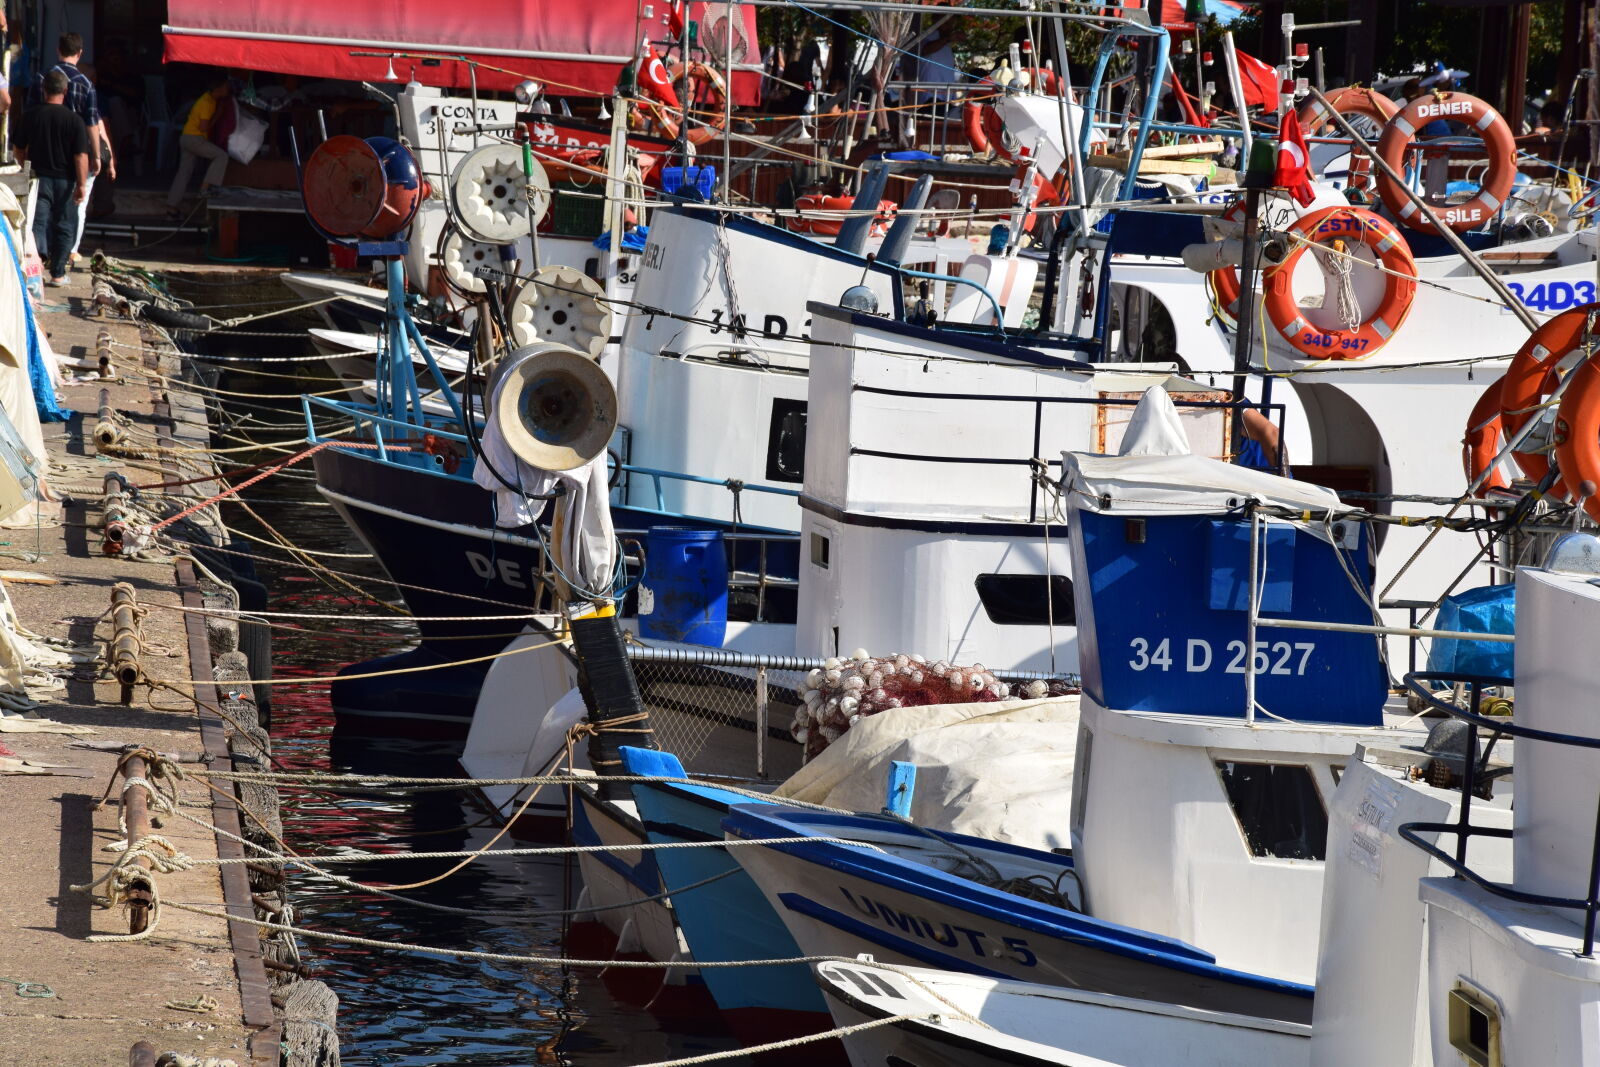 Nikon AF-S DX Nikkor 18-105mm F3.5-5.6G ED VR sample photo. Boat, coast, fishing, boat photography